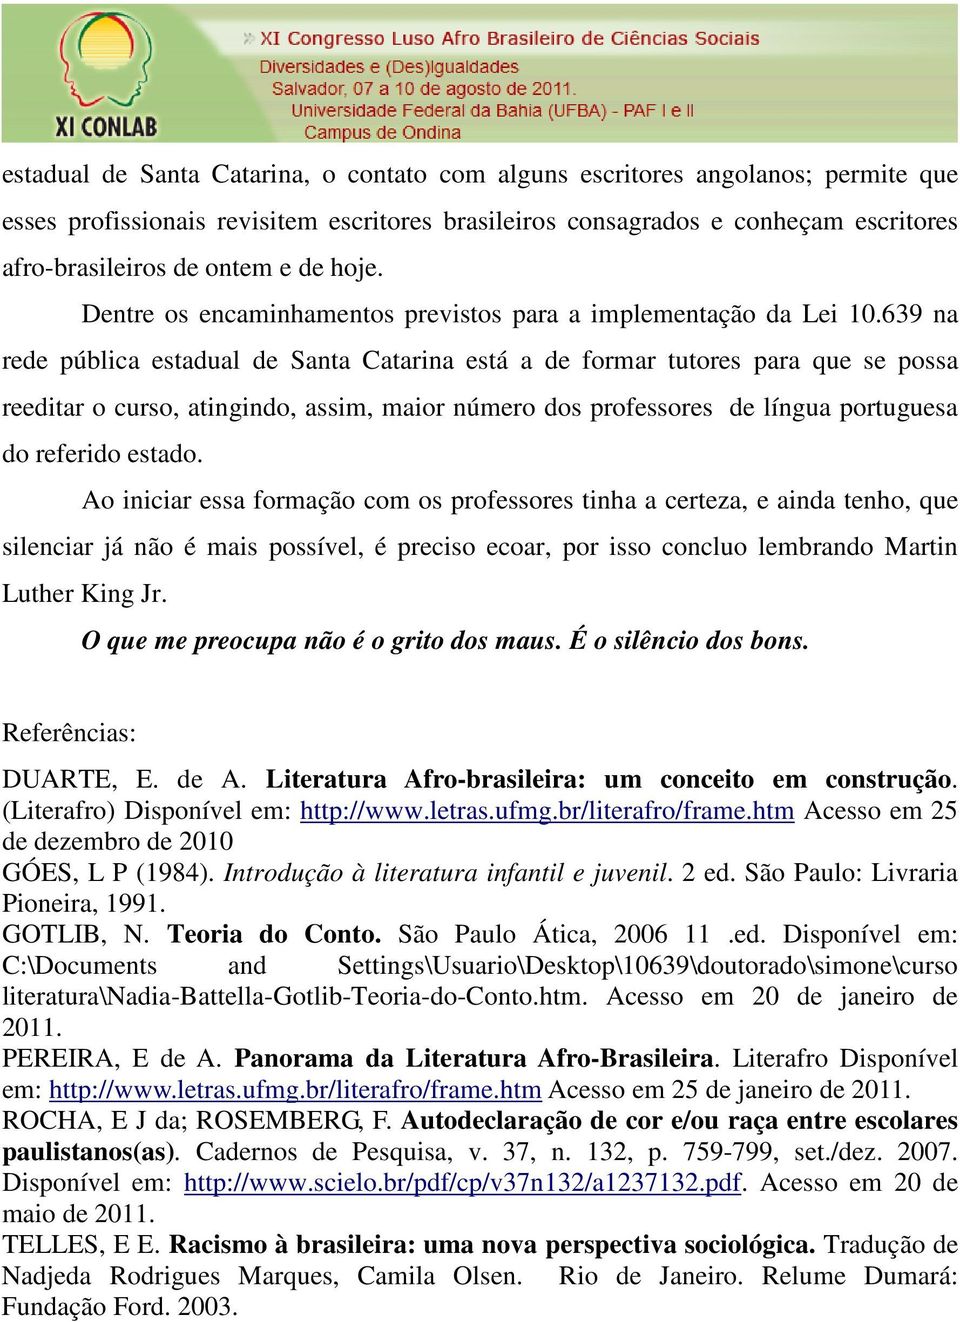 639 na rede pública estadual de Santa Catarina está a de formar tutores para que se possa reeditar o curso, atingindo, assim, maior número dos professores de língua portuguesa do referido estado.